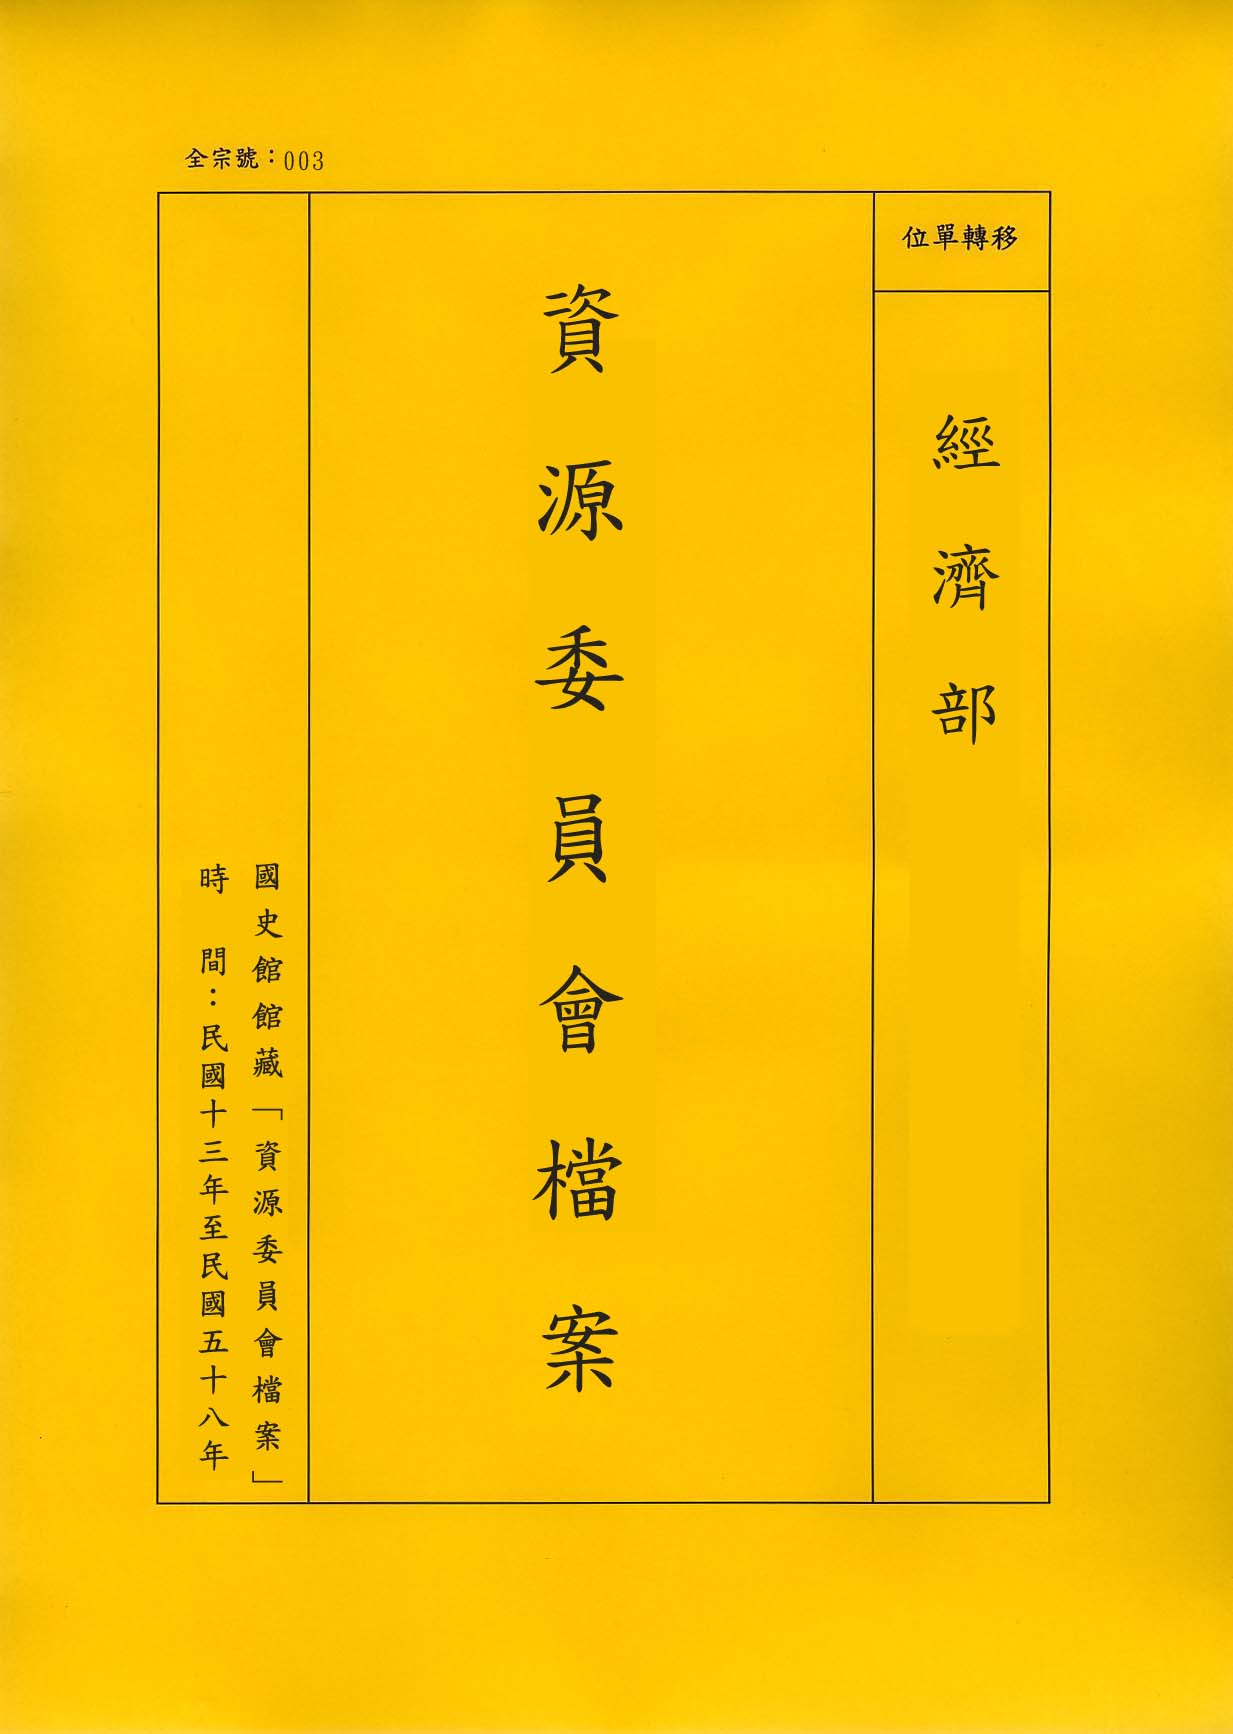 卷名:孫越崎函件及電文Letters and Cables of Mr. Y. C. Sun(003-020100-0554)